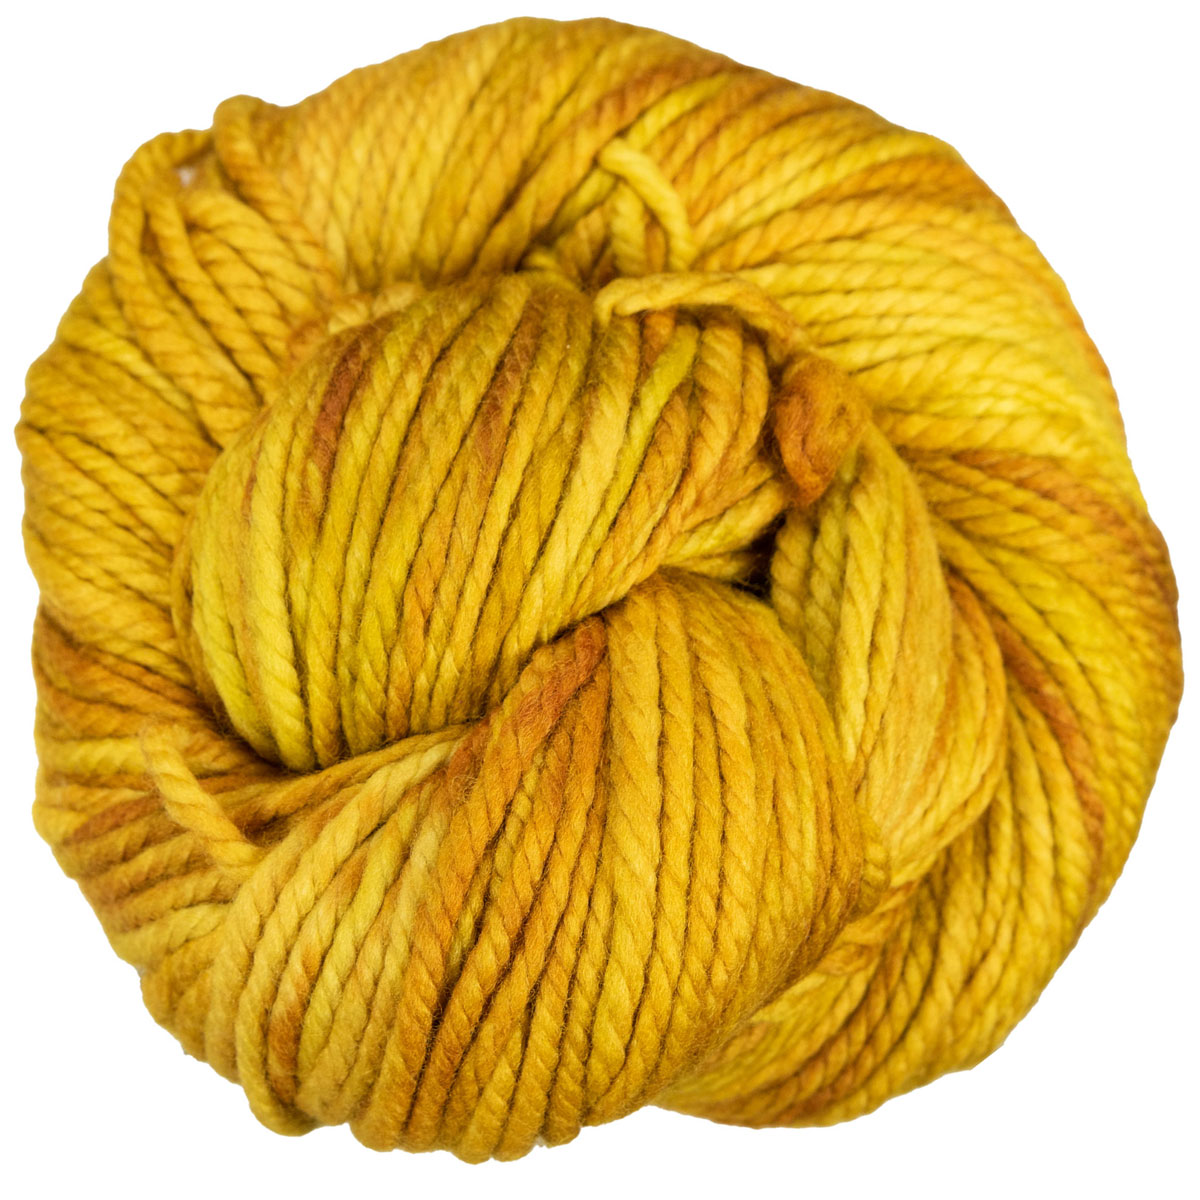 Malabrigo Chunky Yarn - 041 Burgundy at Jimmy Beans Wool